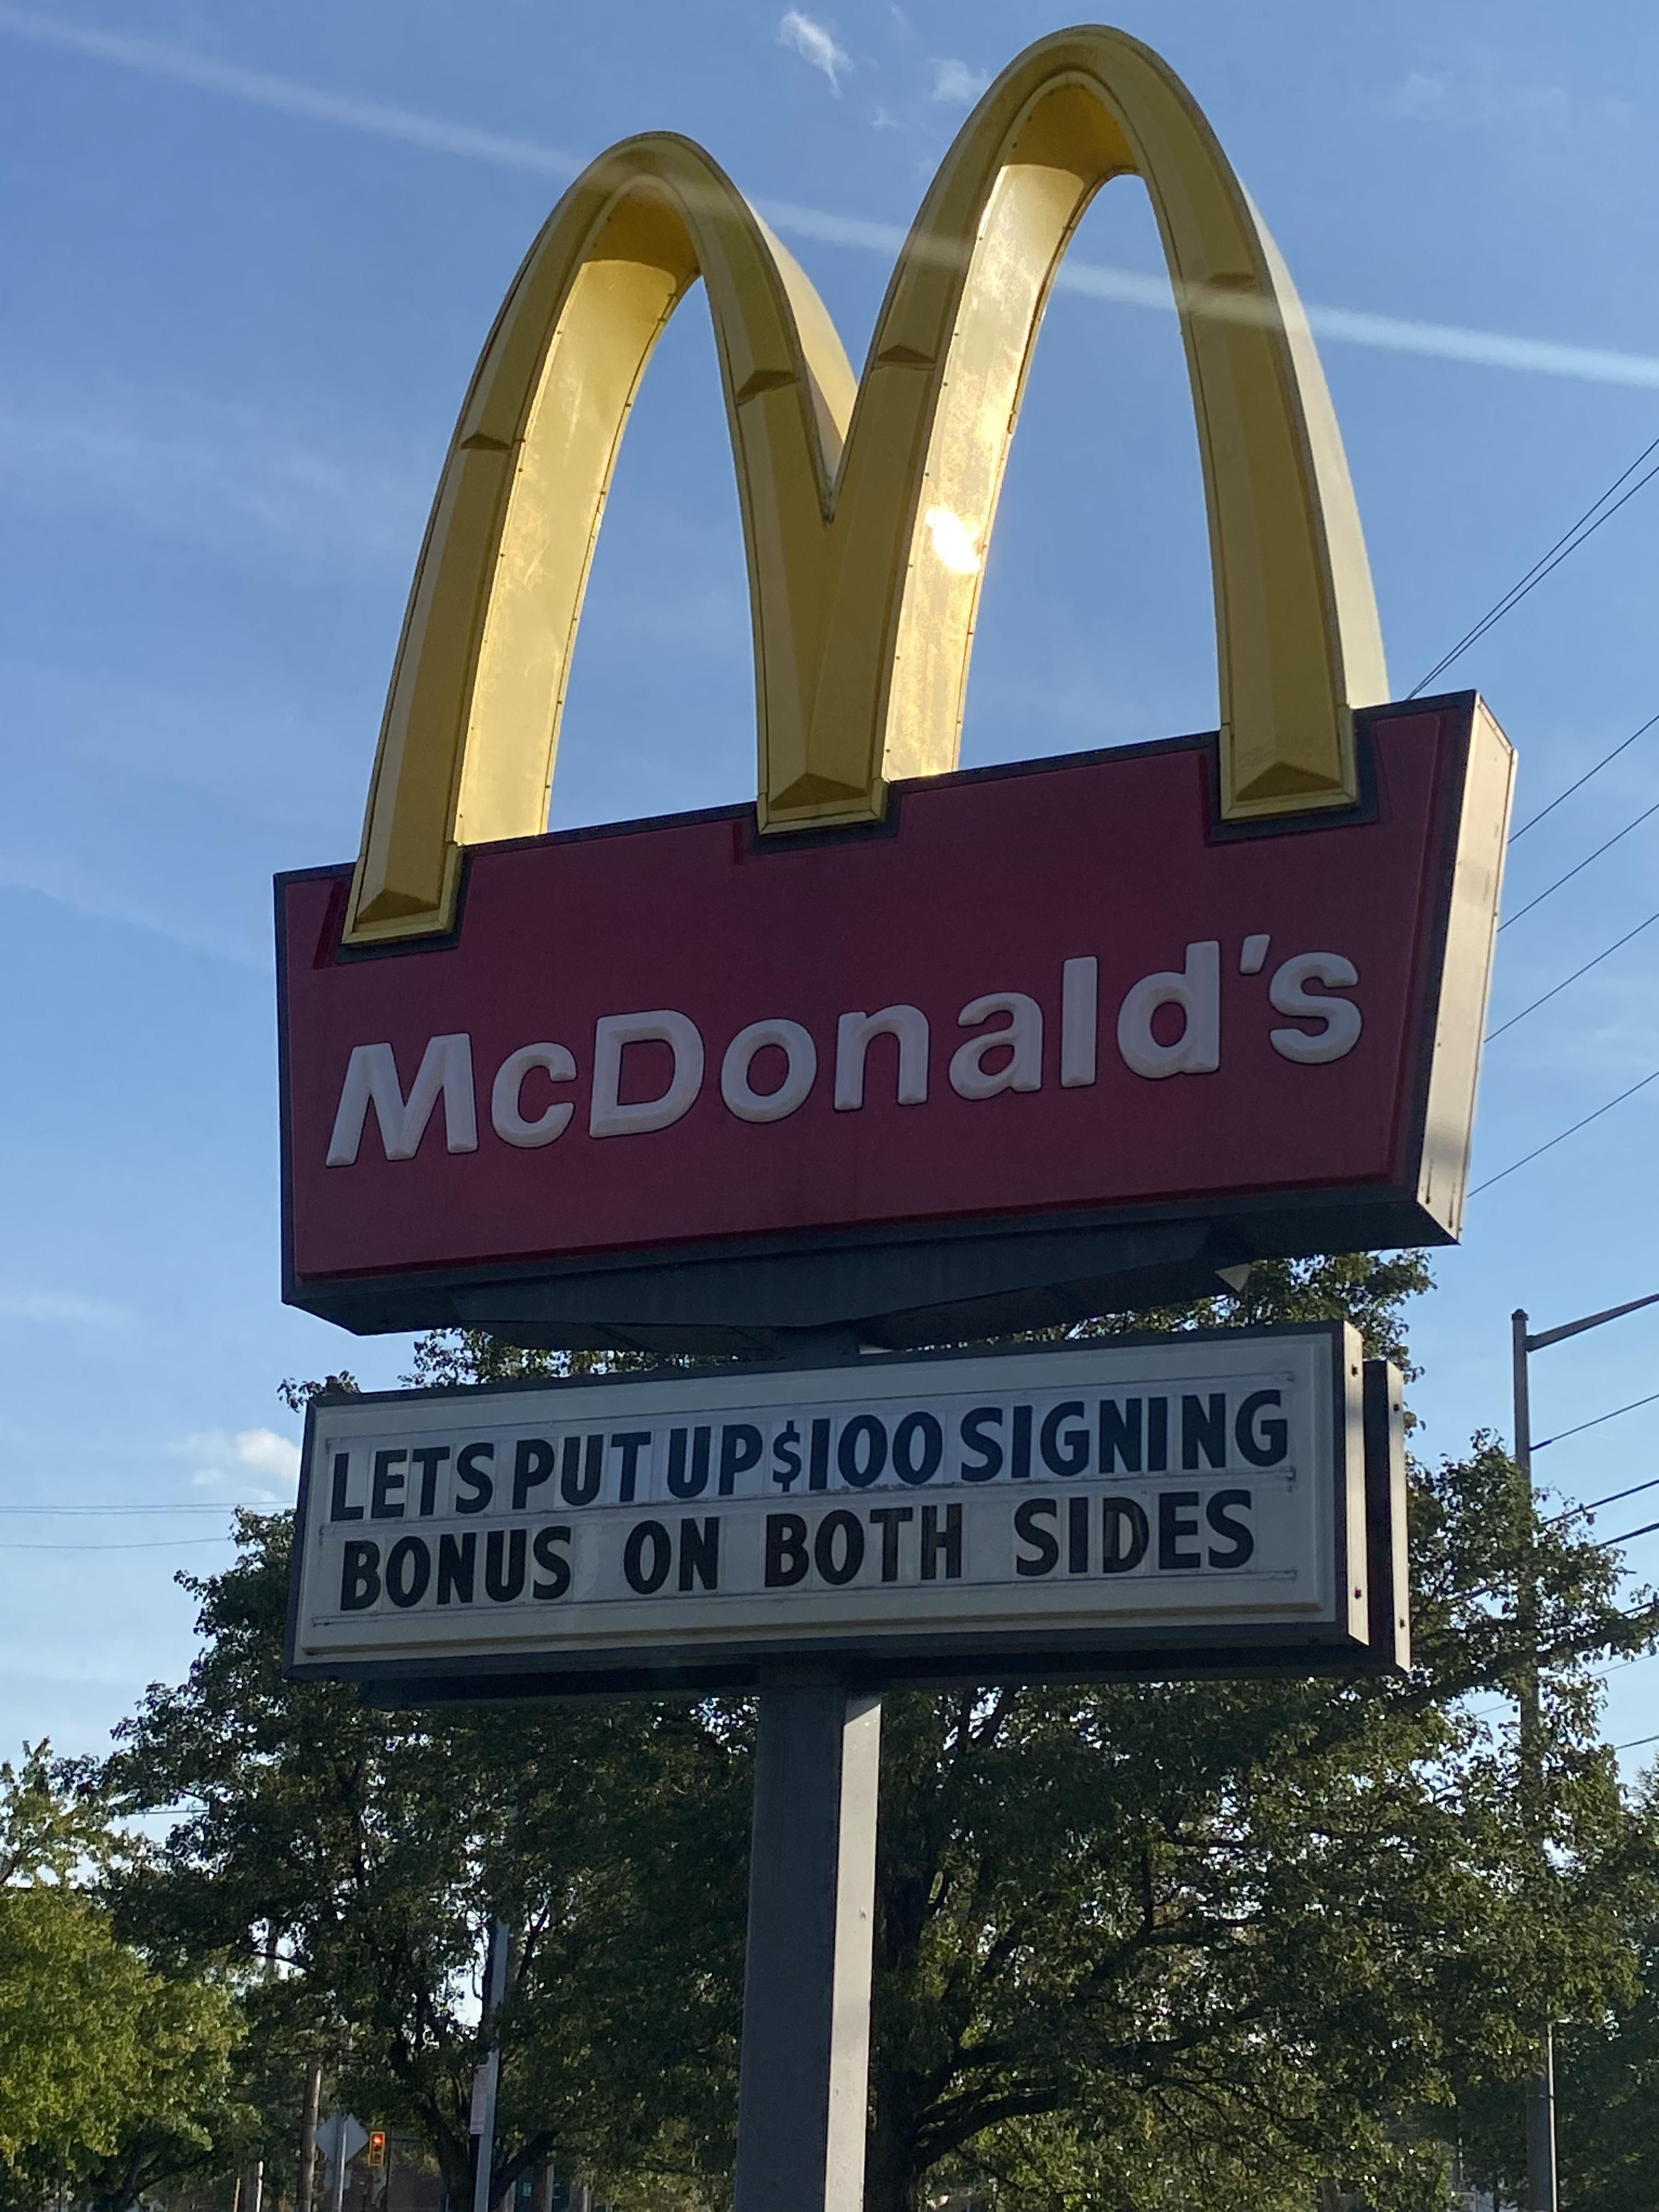 Manager: let’s put up $100 signing bonus on both sides